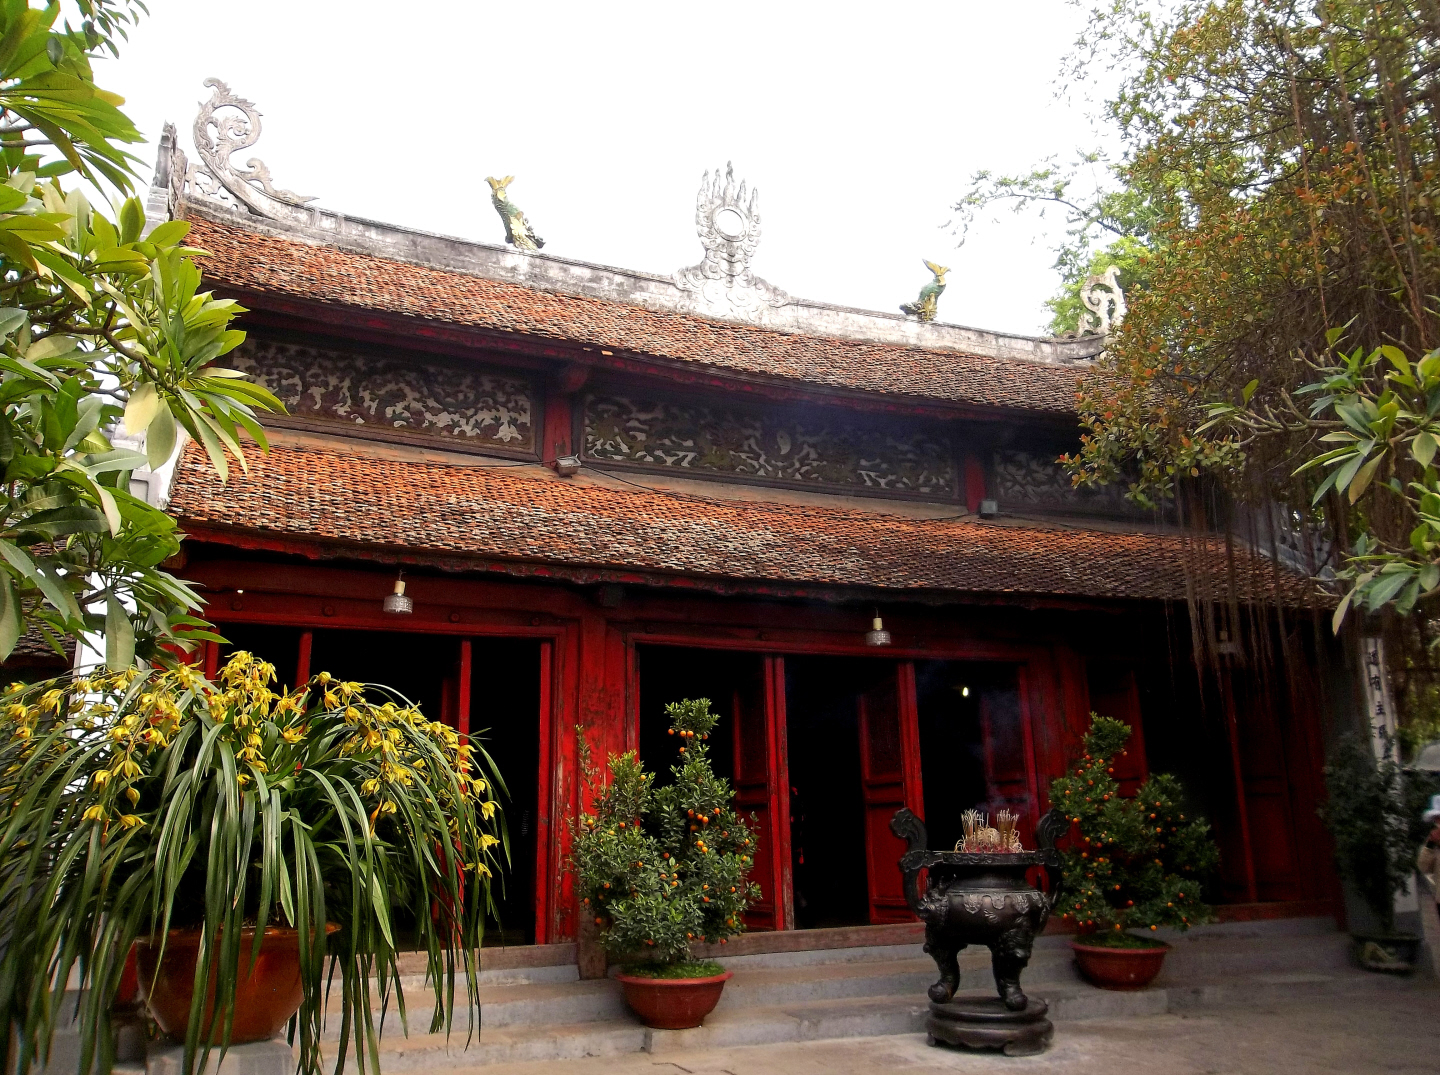 Ngoc Son Temple - Temple of Jade Mountain -on Hoan Kiem Lake in Hanoi, Viet Nam (19th Cen)